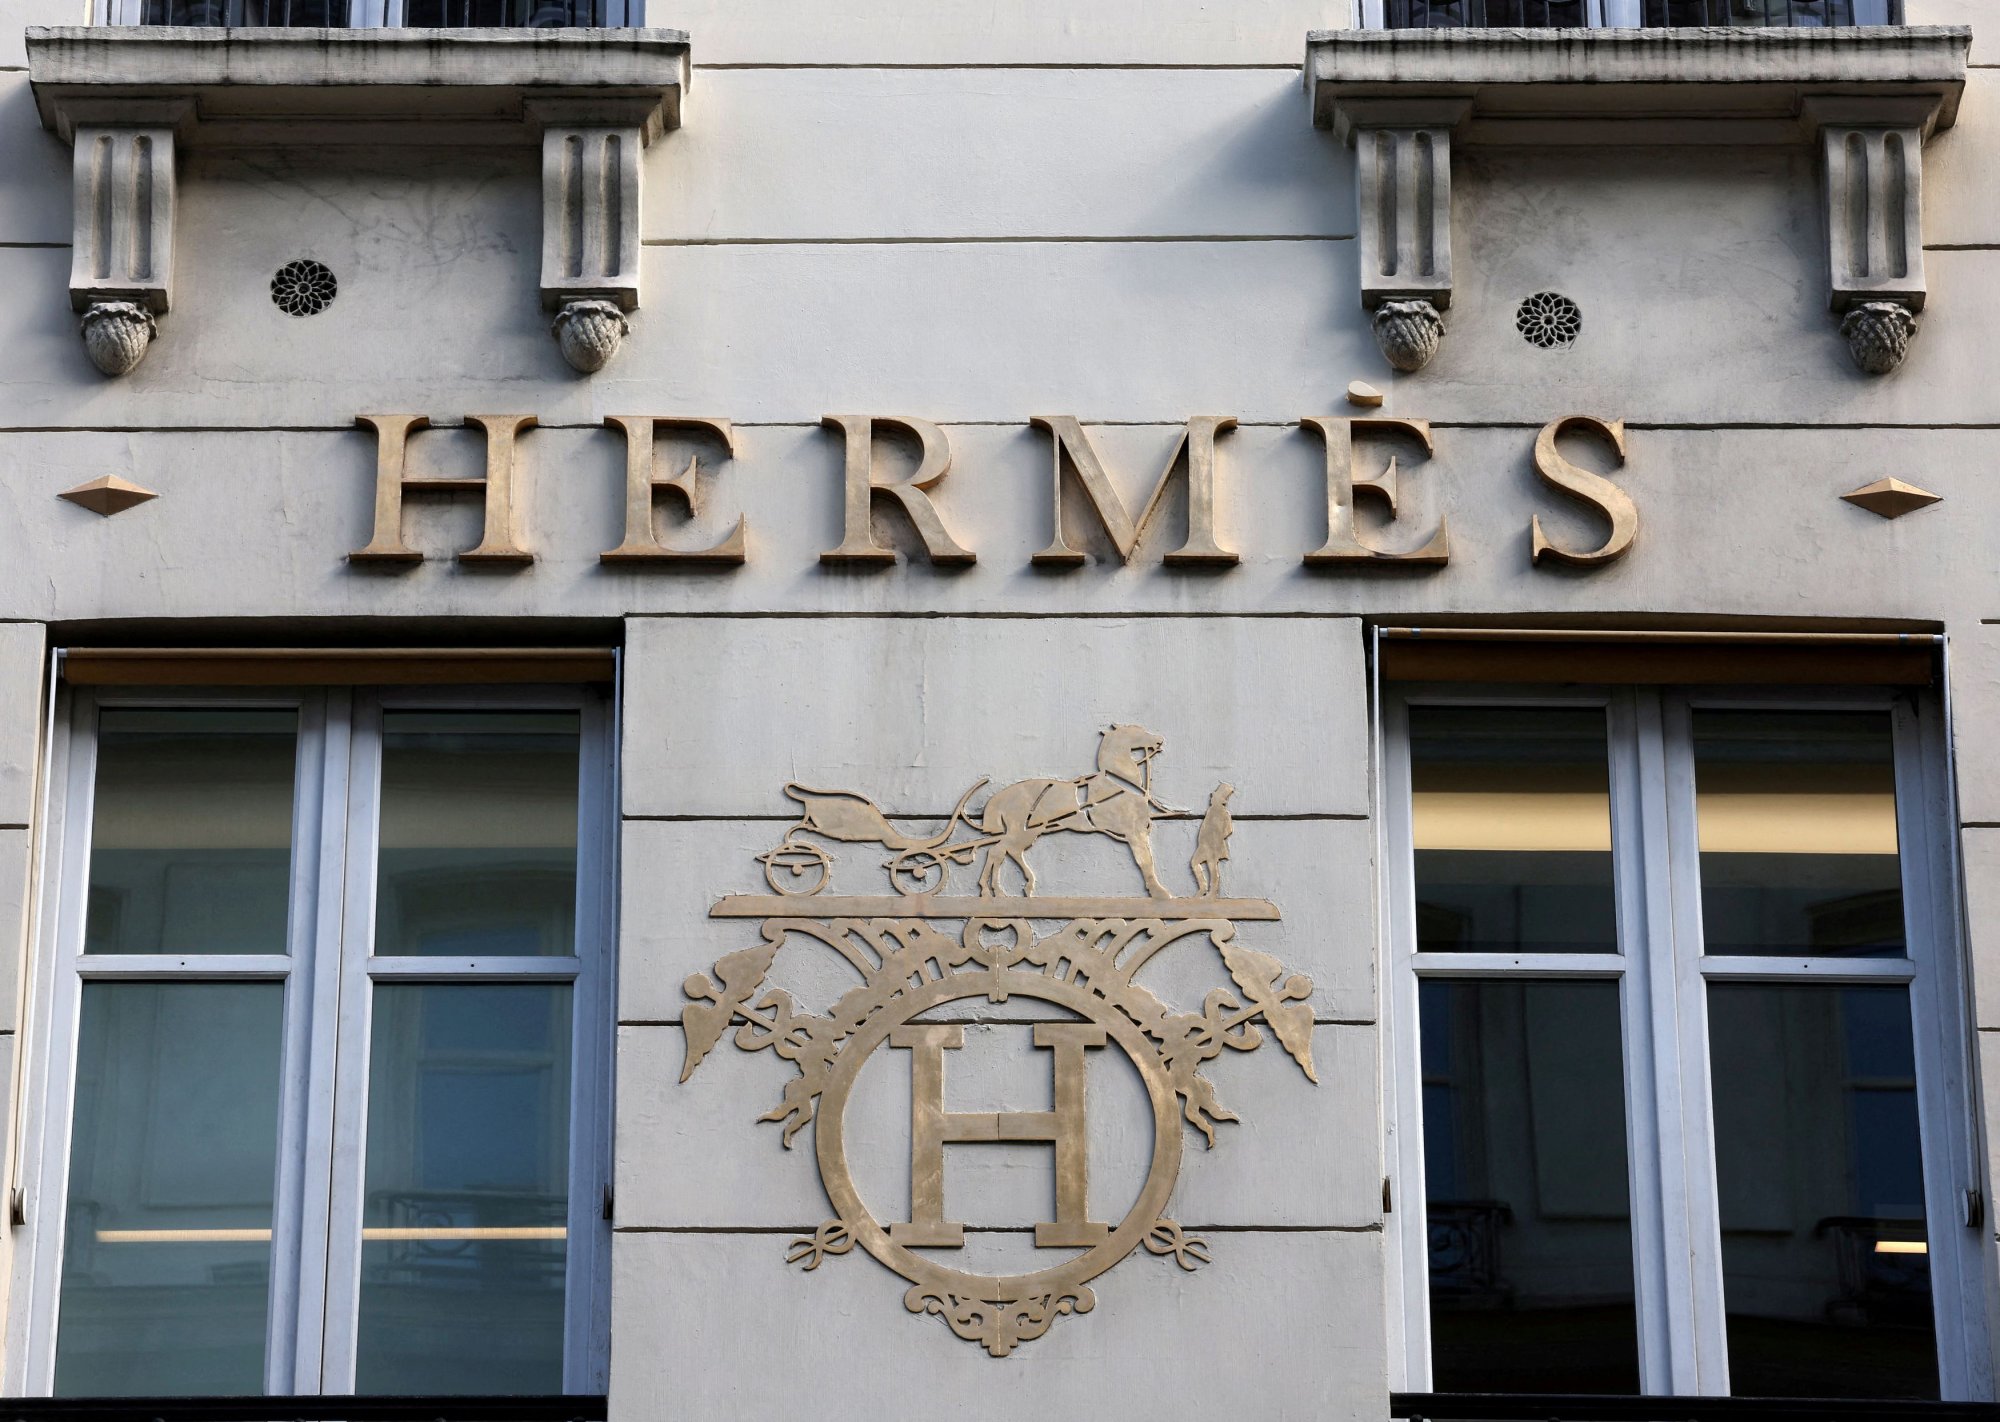 Θύμα κλοπής η κουνιάδα του εμίρη του Κατάρ ενώ ταξίδευε για Παρίσι - Της άρπαξαν 11 τσάντες Hermès